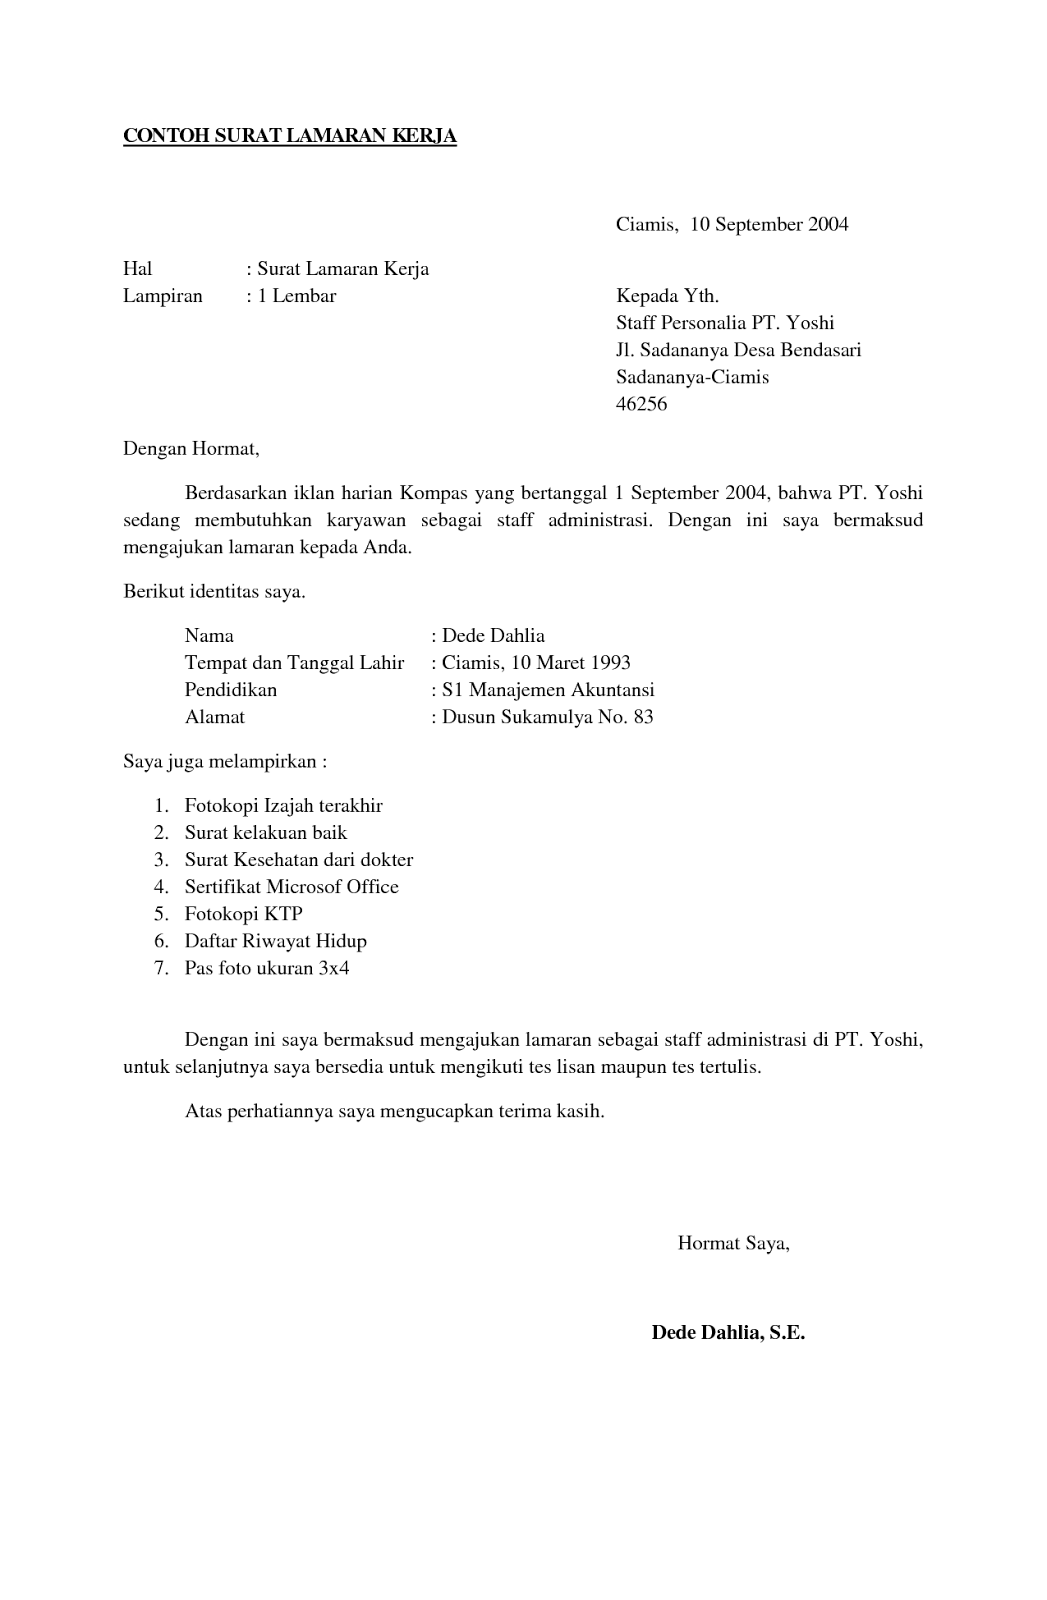 Format Surat Lamaran Kerja dan CV - ben jobs